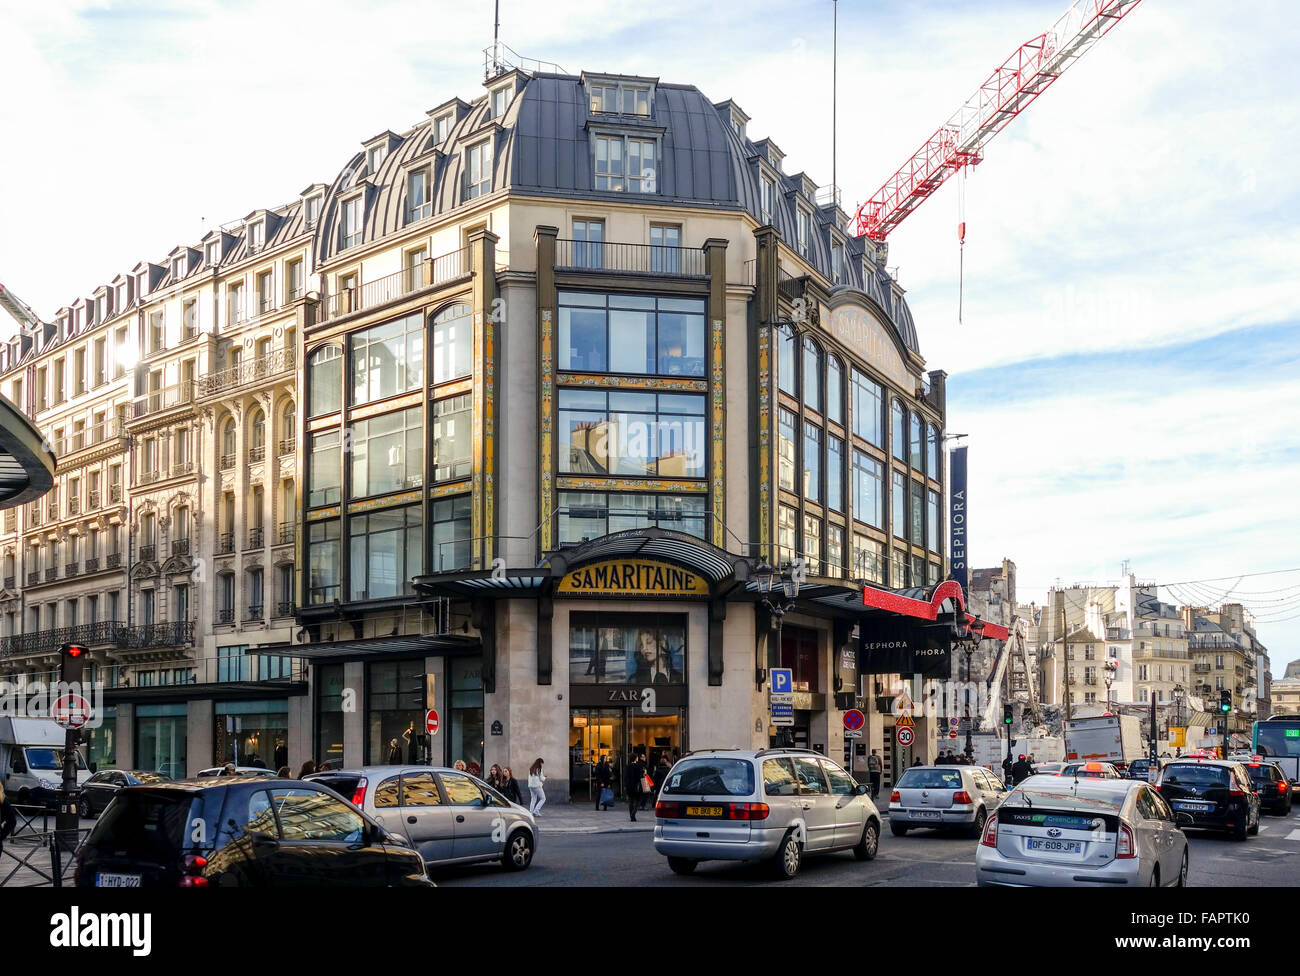 La Samaritaine, department store in ingresso, con nuovi impianti di costruzione dietro. Parigi, Francia. Foto Stock